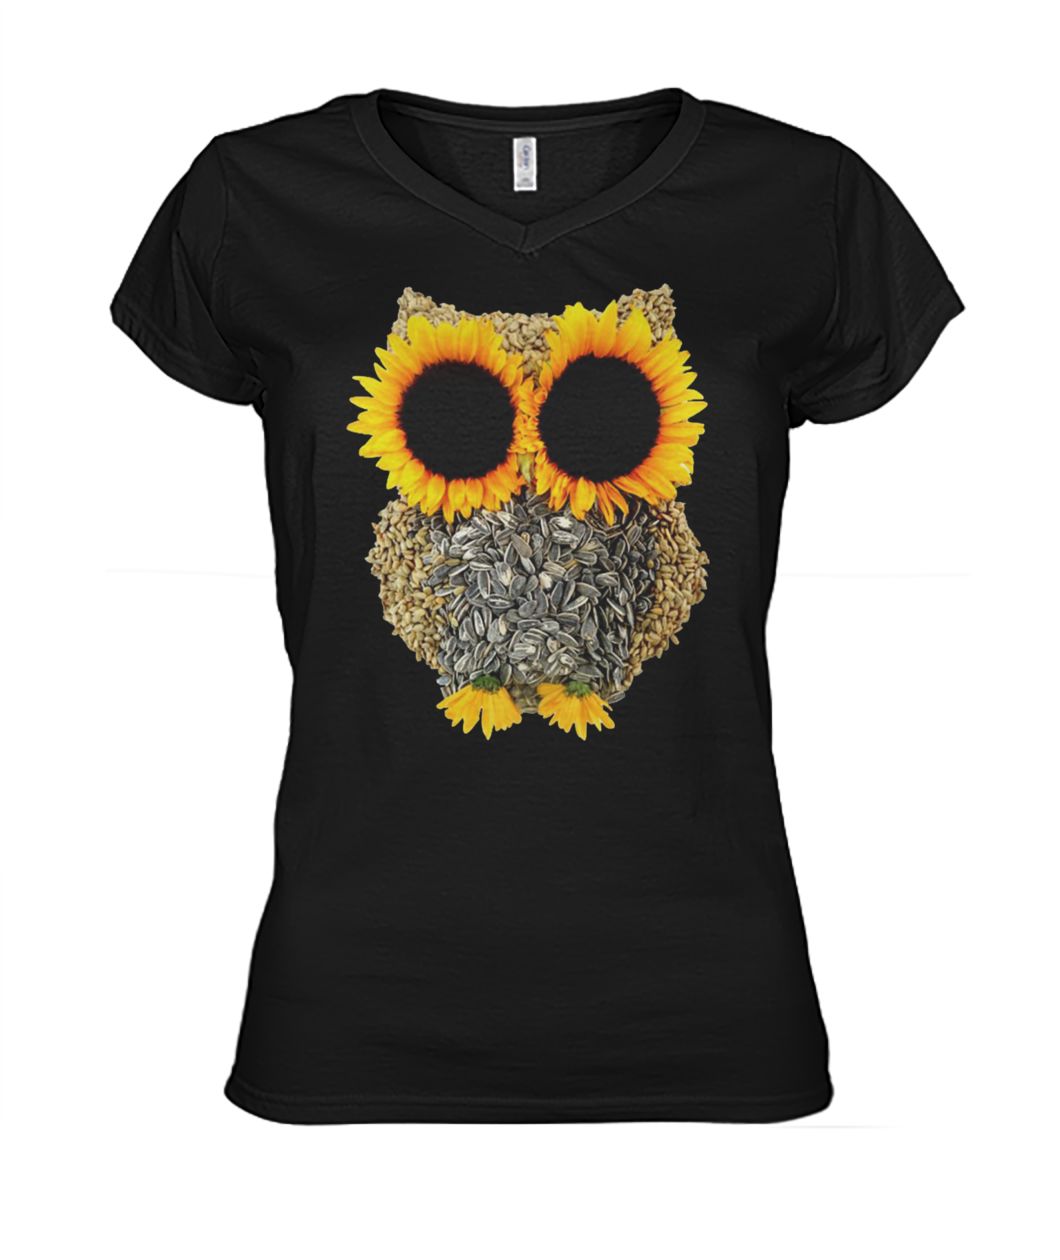 Owl sunflower women's v-neck